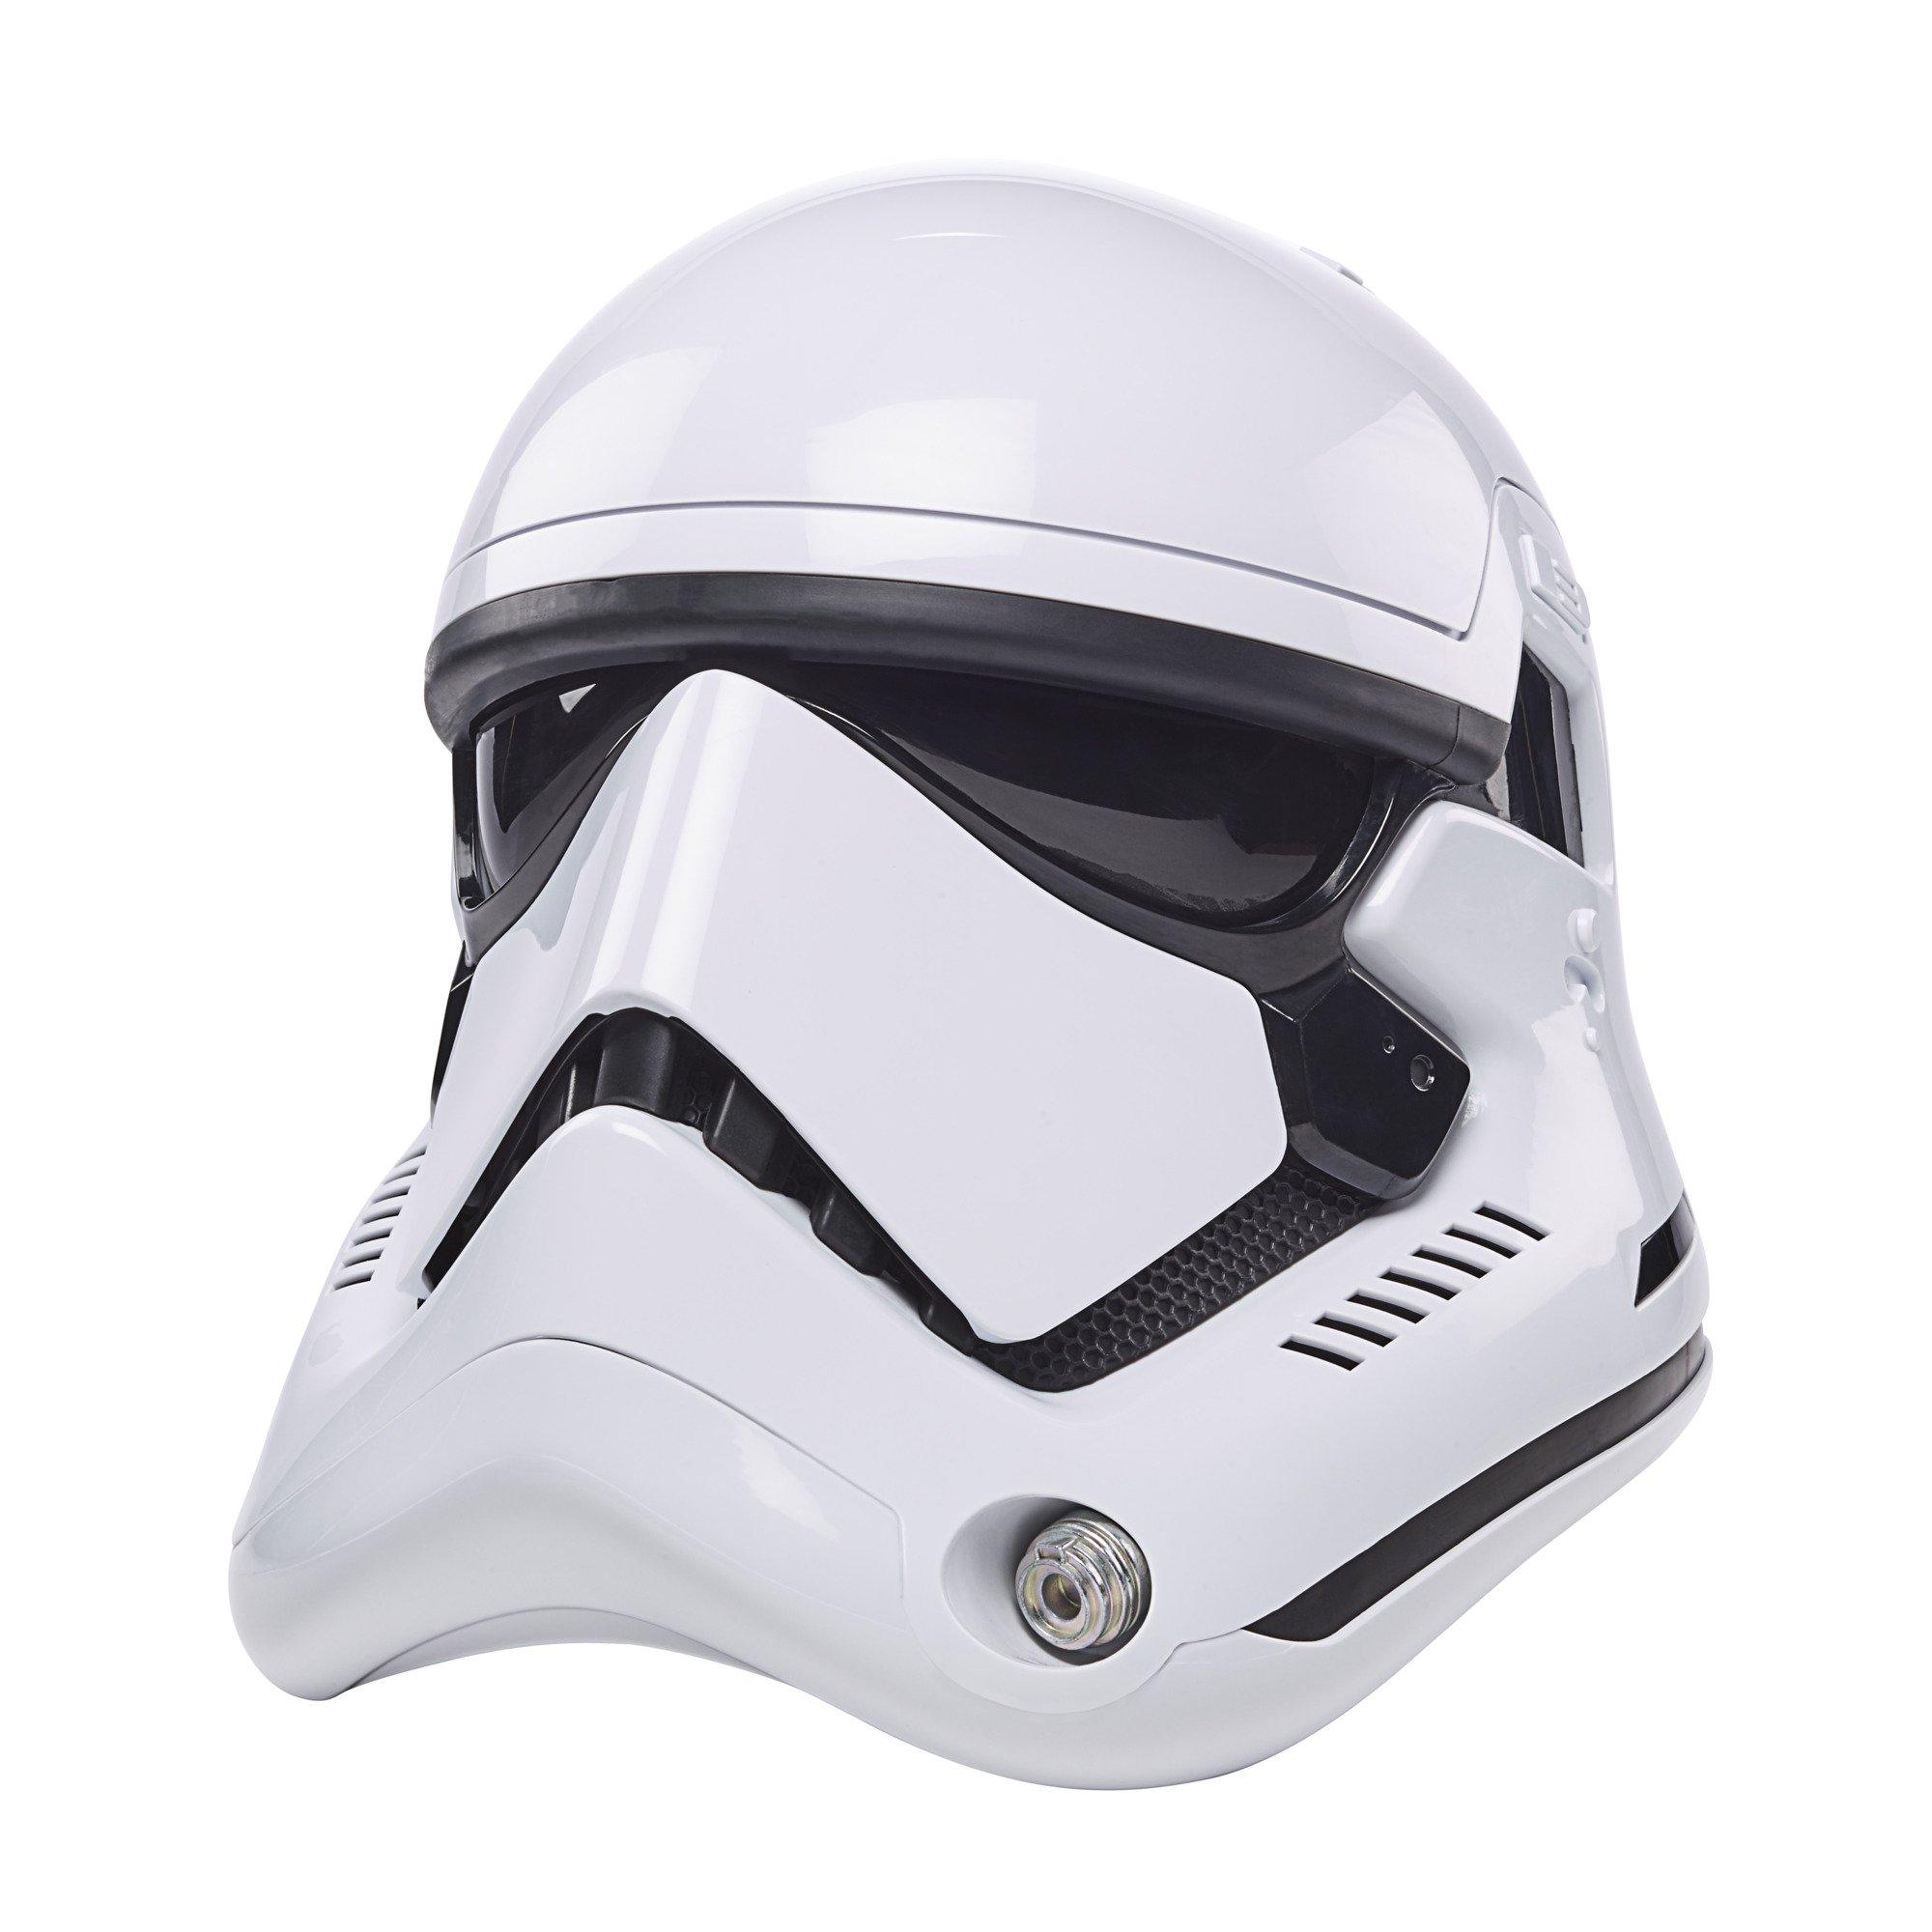 Star Wars The Black Series First Order Stormtrooper Helmet Hasbro Pre Sale 